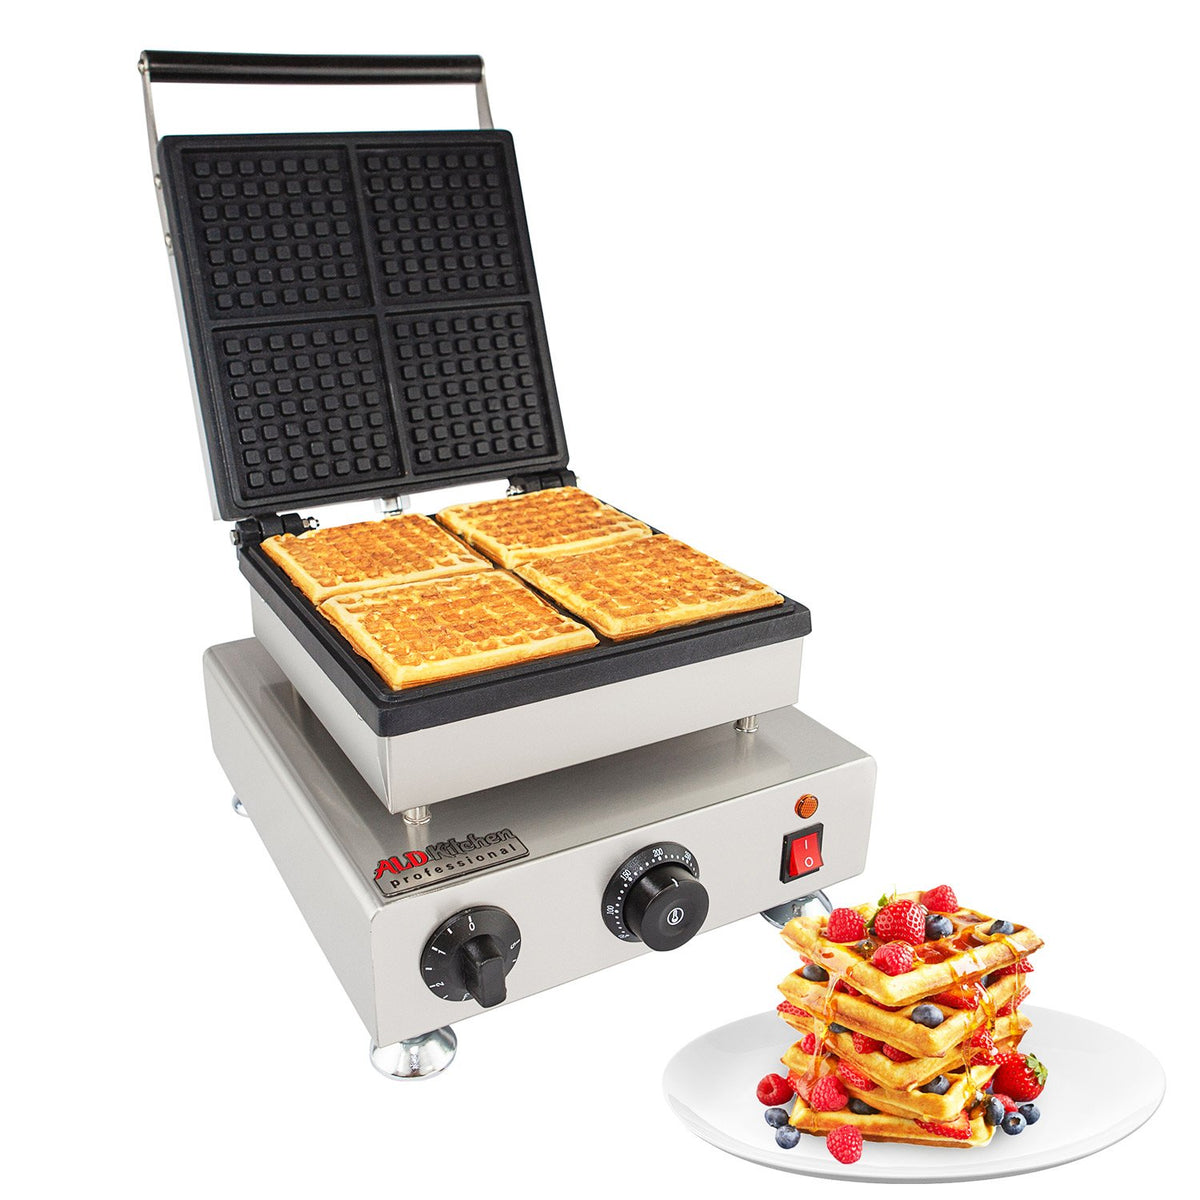 http://www.professionalkitchen.equipment/cdn/shop/products/belgian-waffle-maker-1-1_8afaea64-0598-4441-98a1-7b93d8a031a3_1200x1200.jpg?v=1619995466